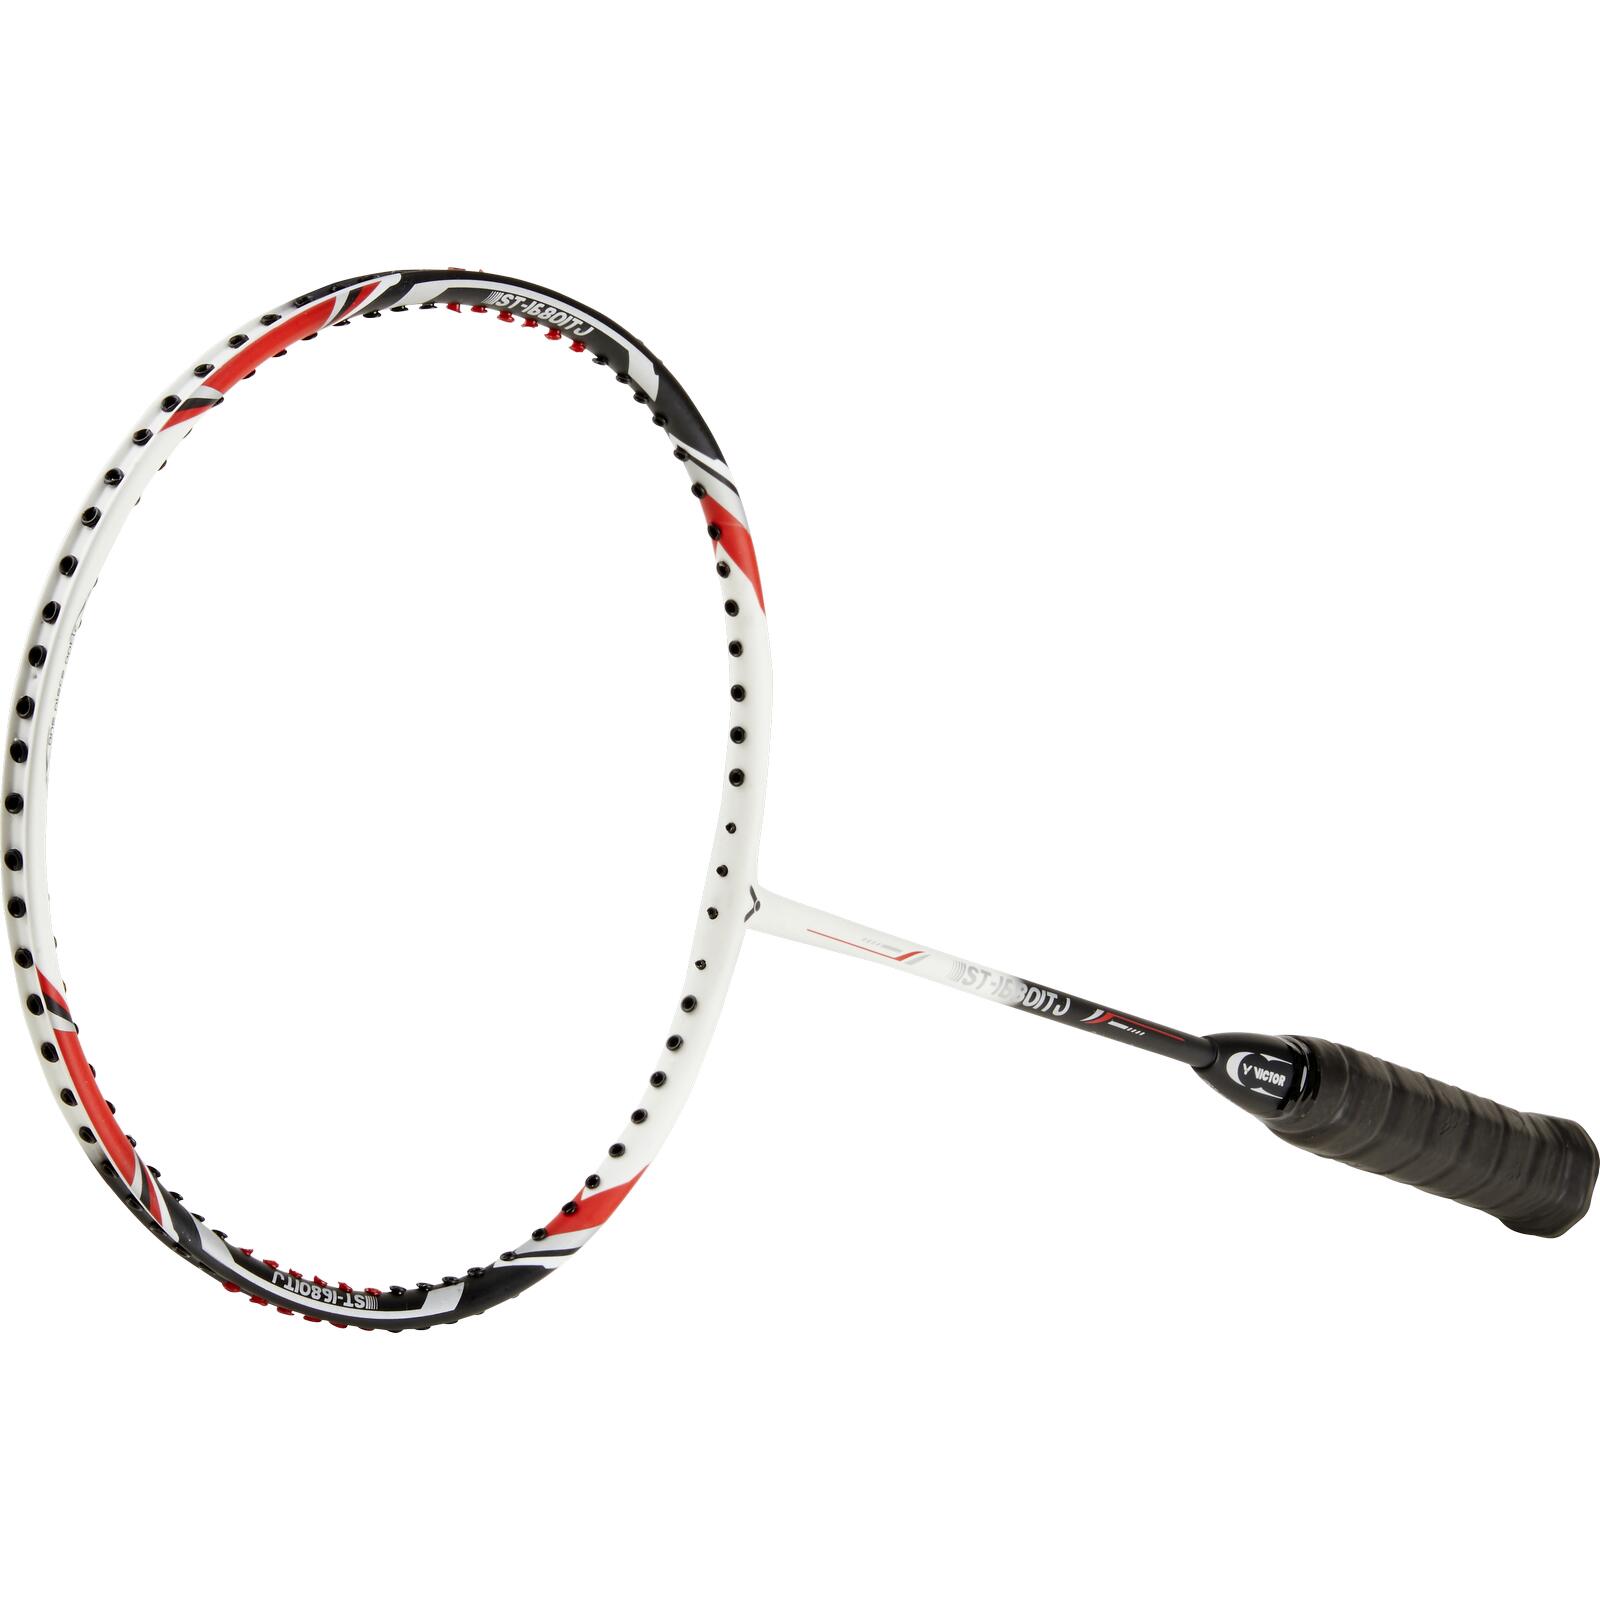 ST-1680 Badminton Racket 4/5